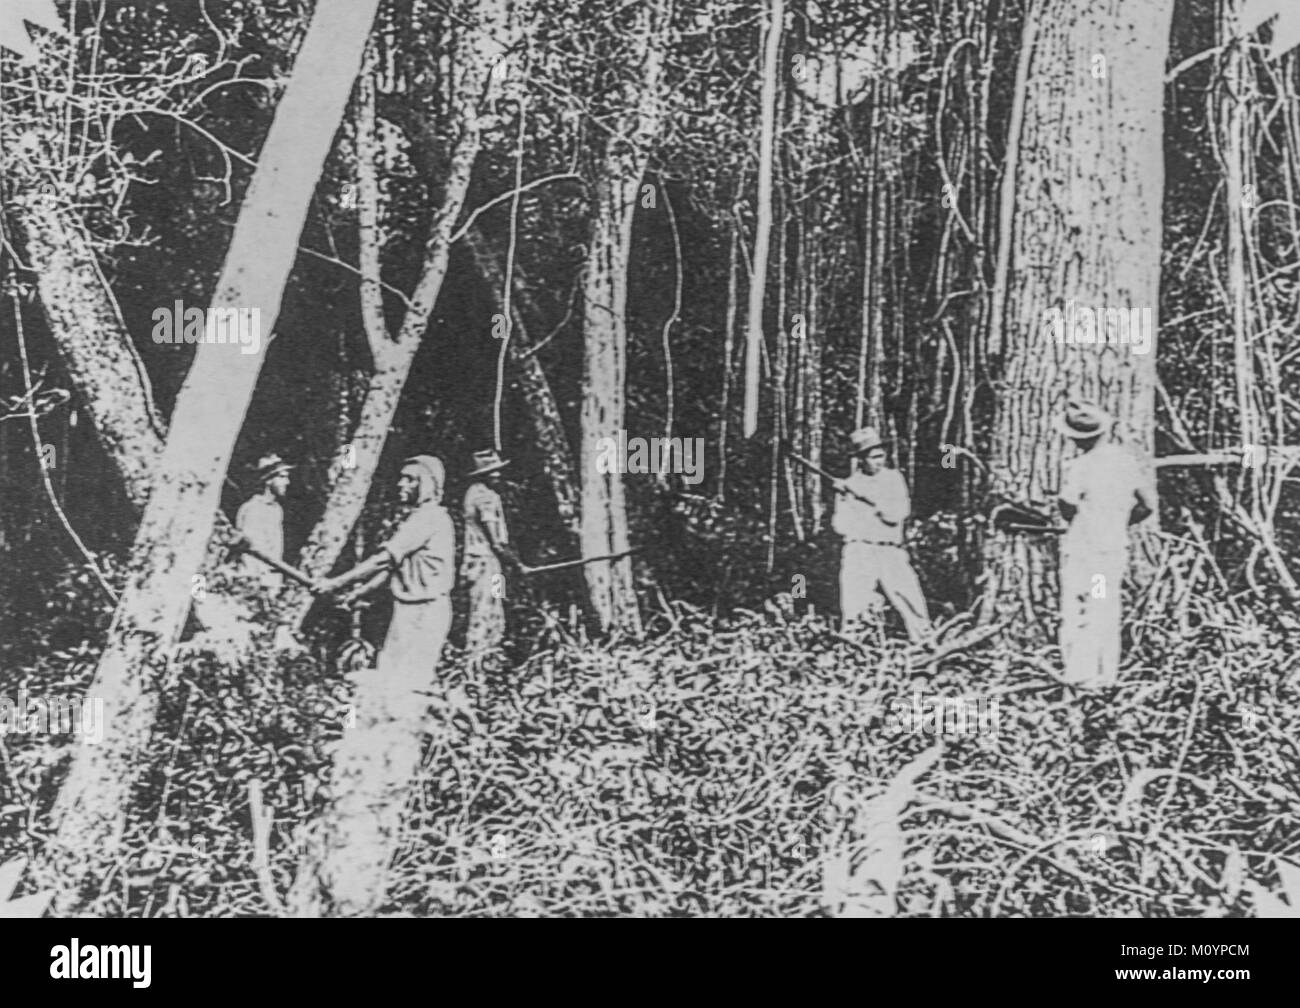 Japanischen Immigranten Arbeiter schneiden Baum zu machen Farm in Brasilien c 1930. Stockfoto